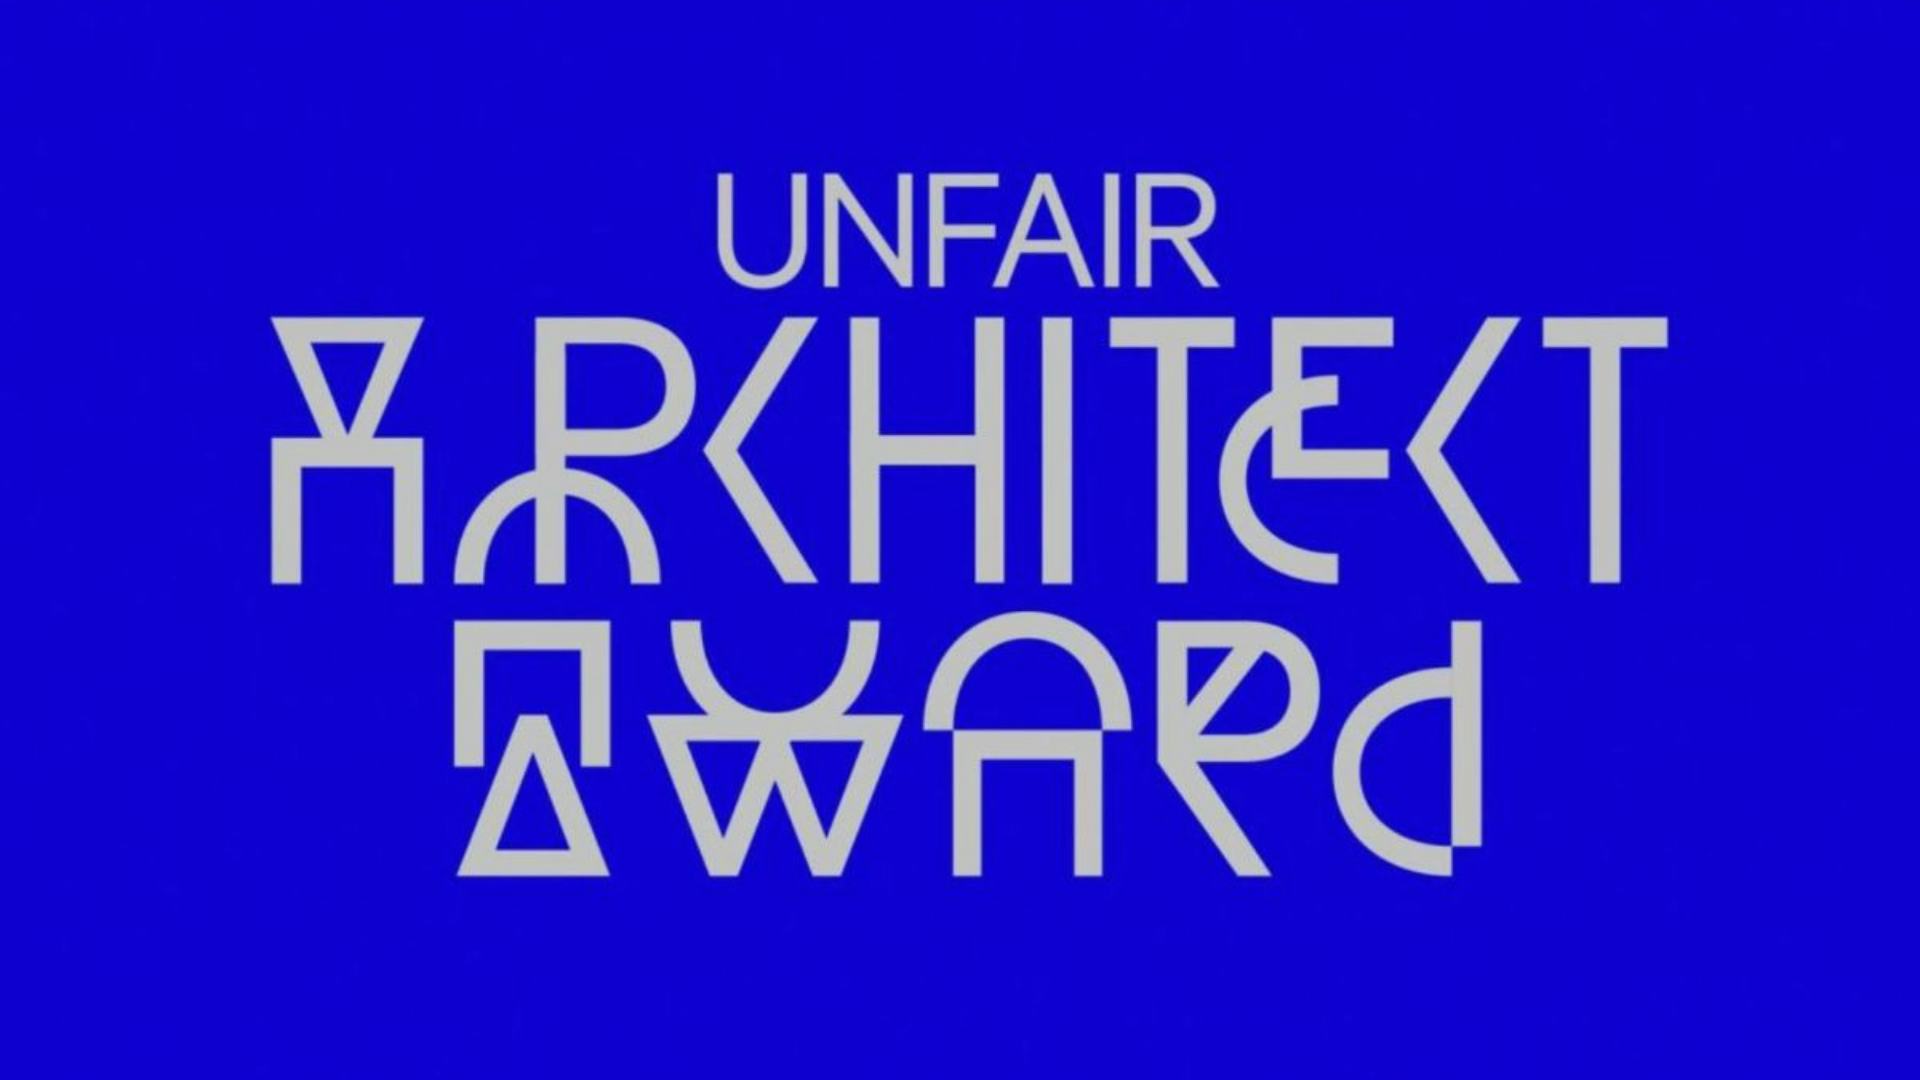 Aanmelden voor Unfair Architect Award